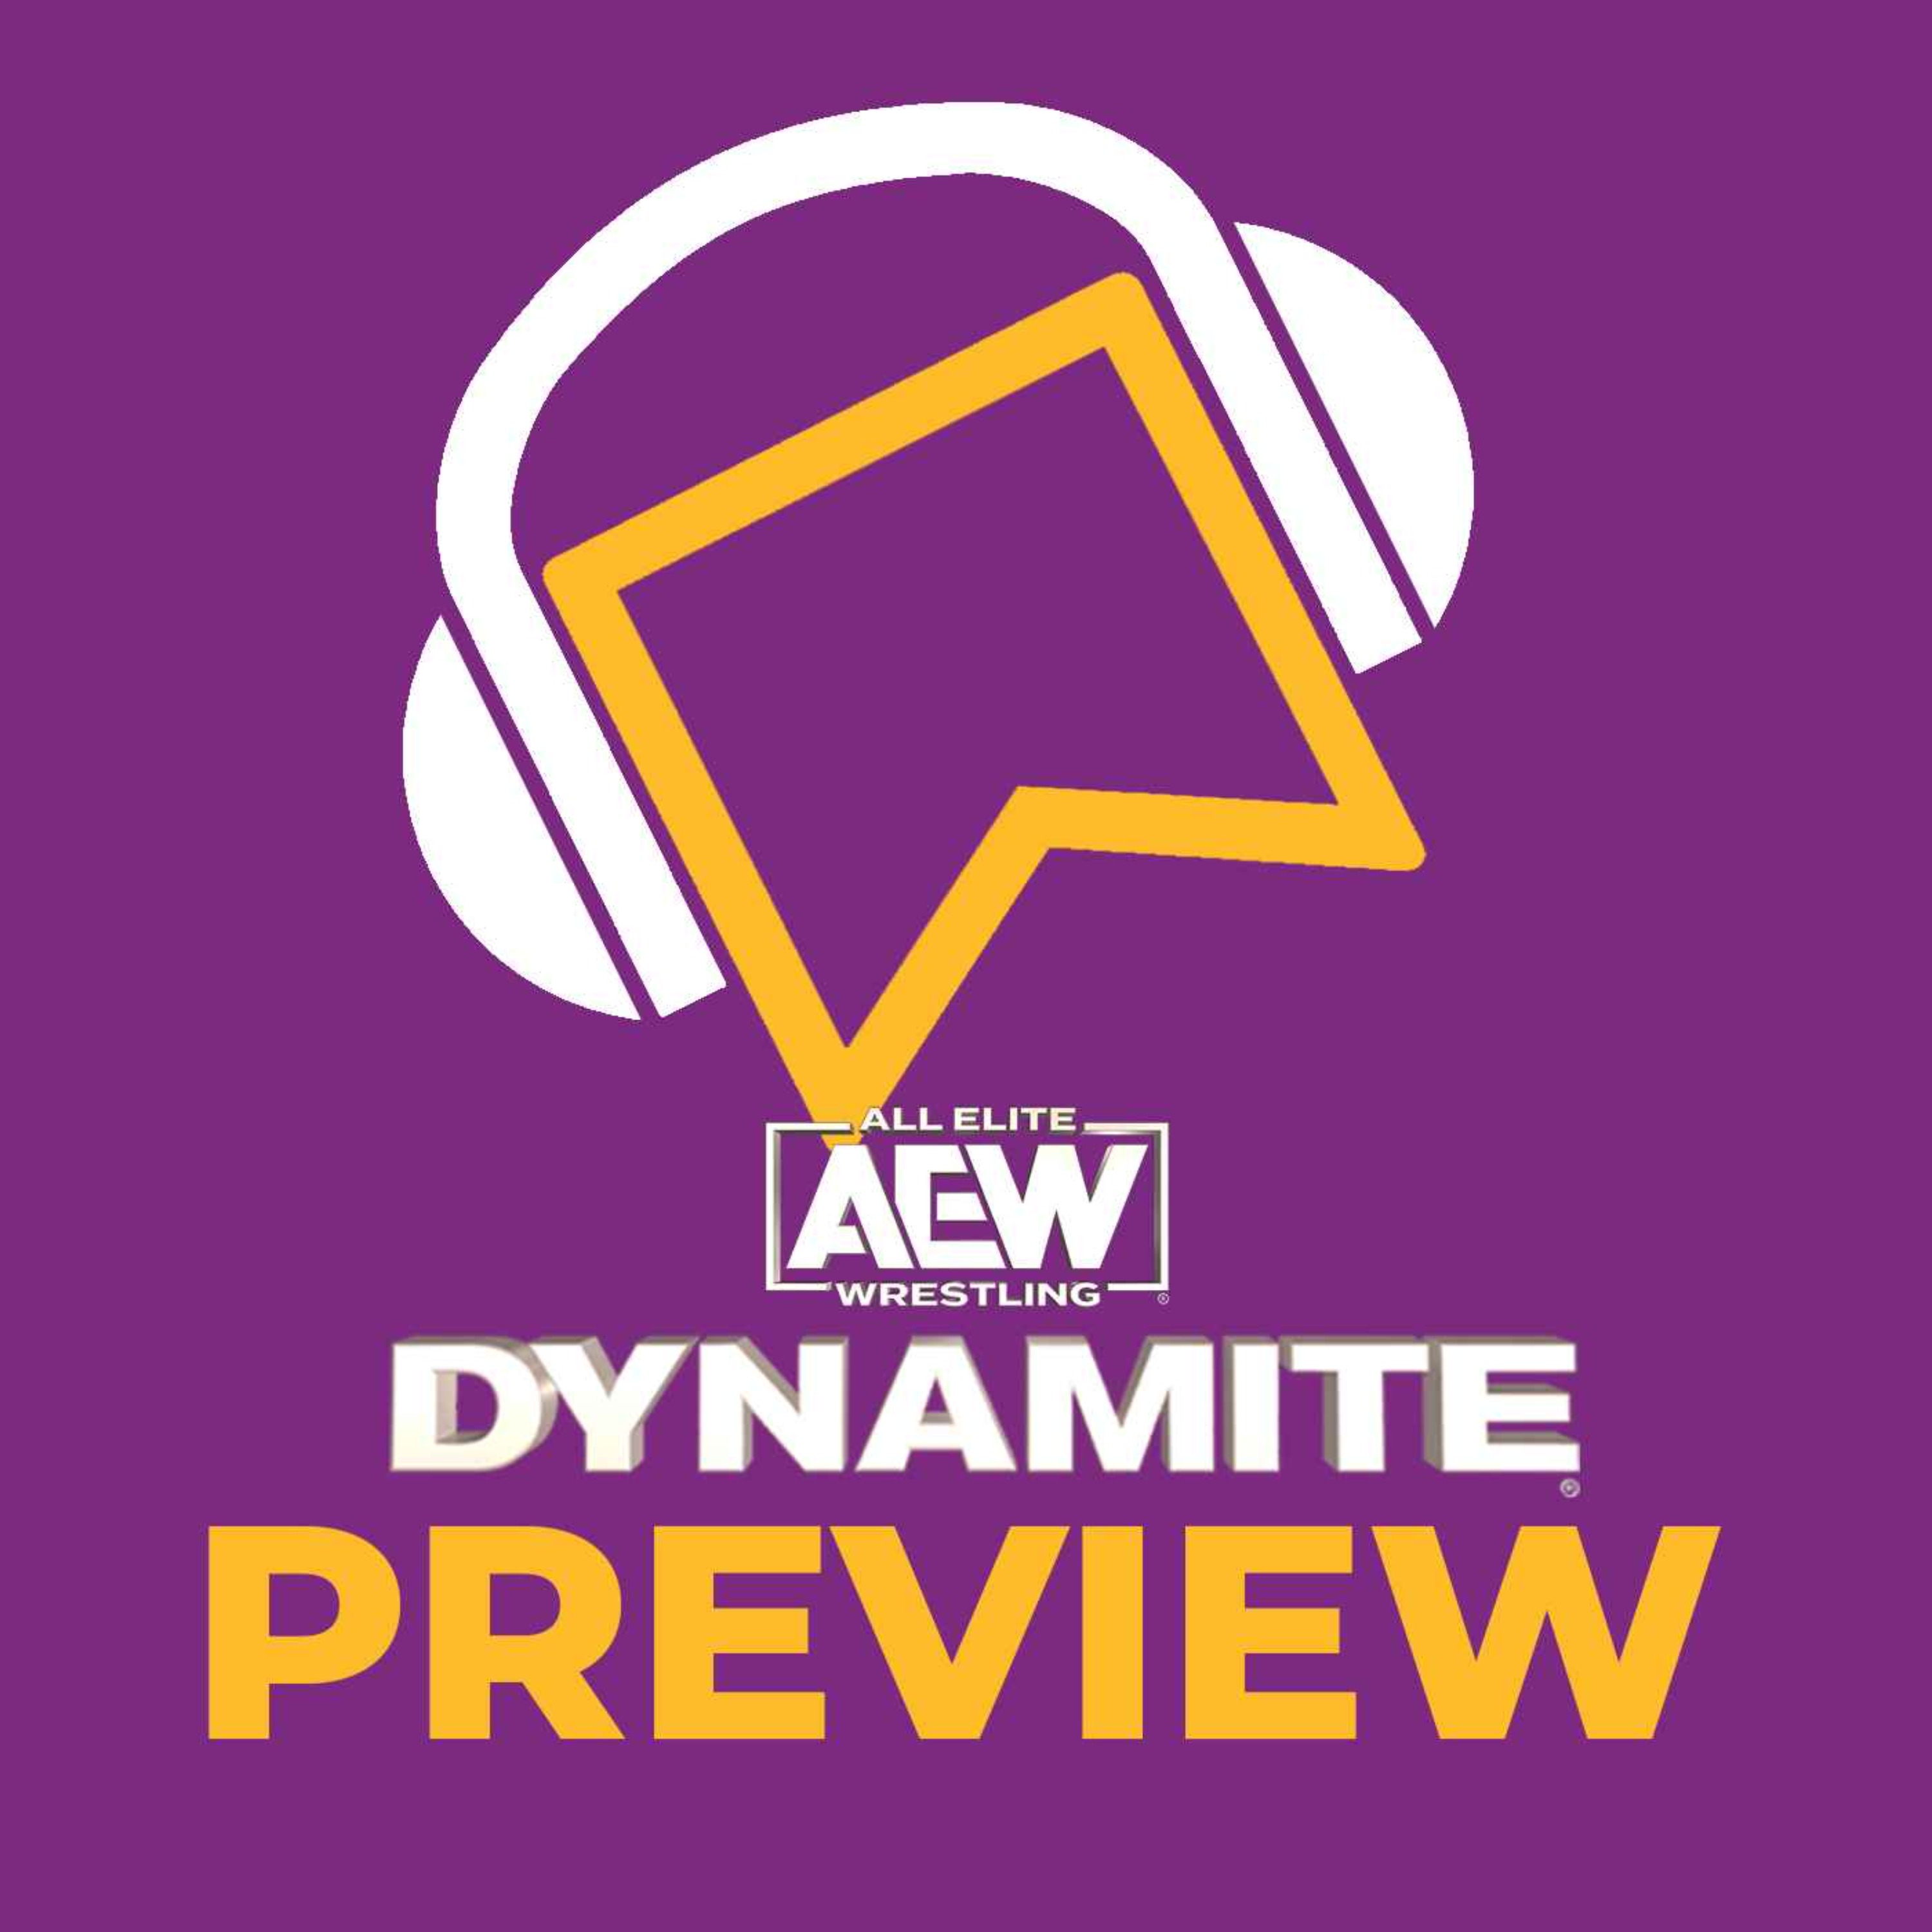 AEW Dynamite Preview - Dynamite 250! - Mariah May Speaks! - Will Ospreay Vs. MJF - Swerve Strickland Vs. Kazuchika Okada - Mercedes Moné Vs. Nyla Rose